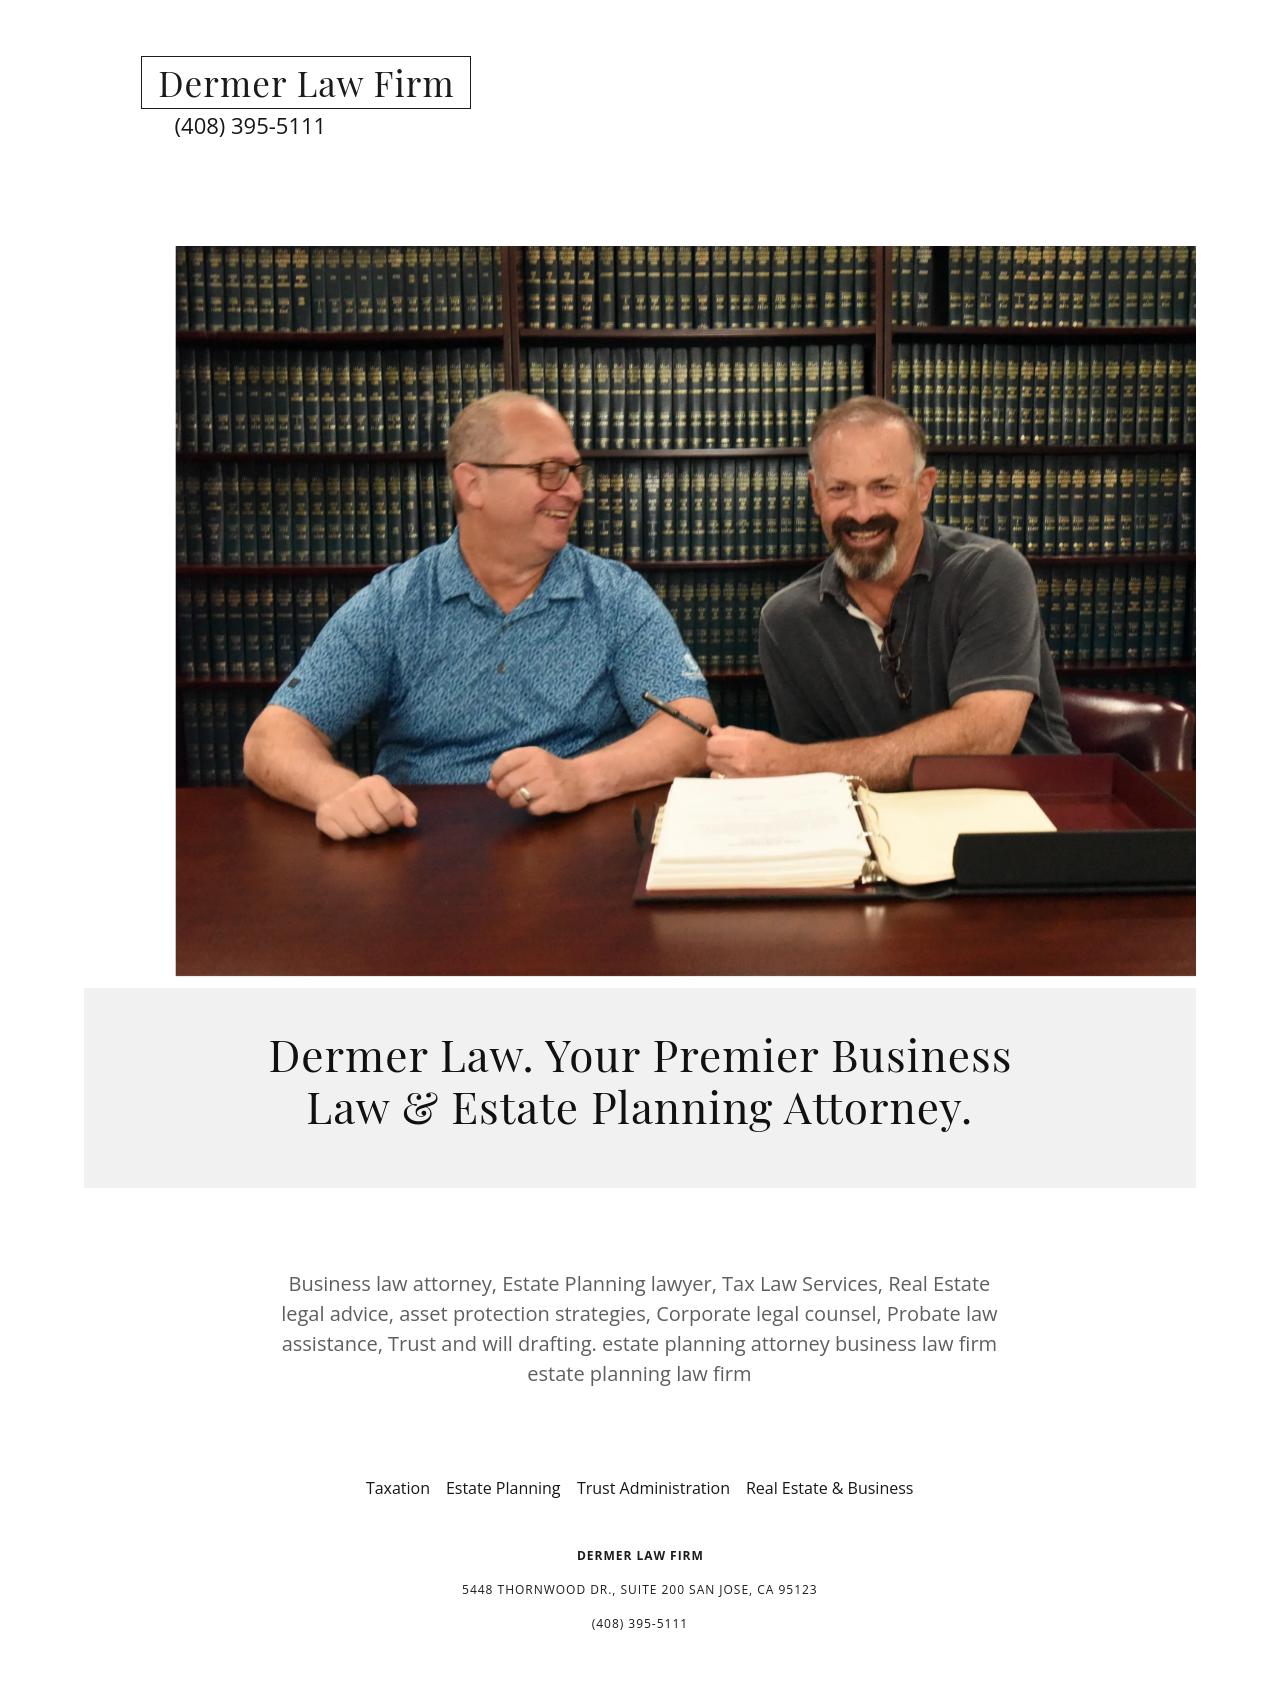 Dermer Law Firm - Los Gatos CA Lawyers